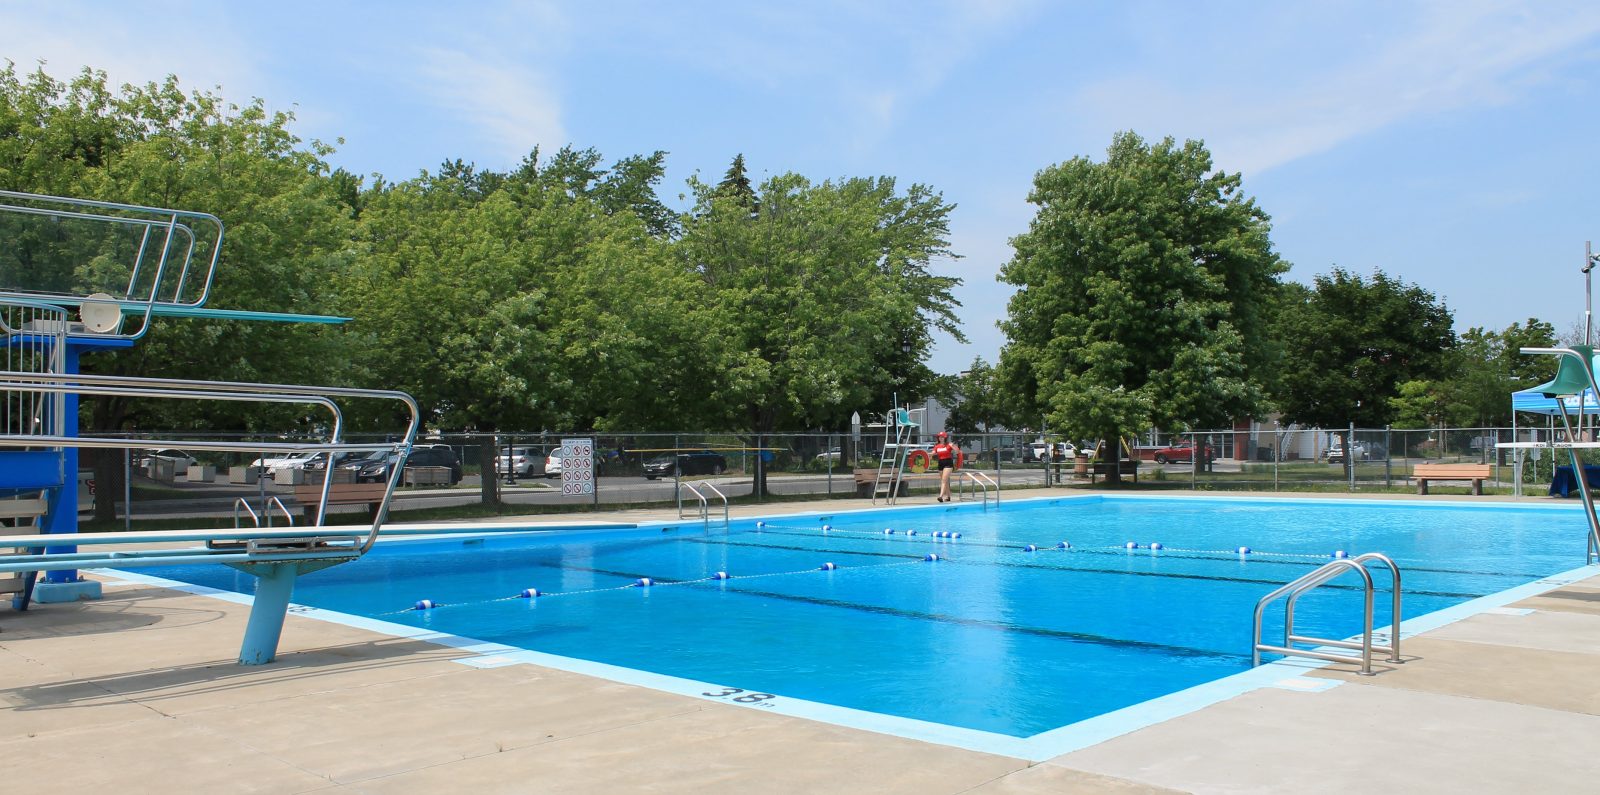 Des cours de natation gratuits à la piscine Saint-Joseph pendant l’été